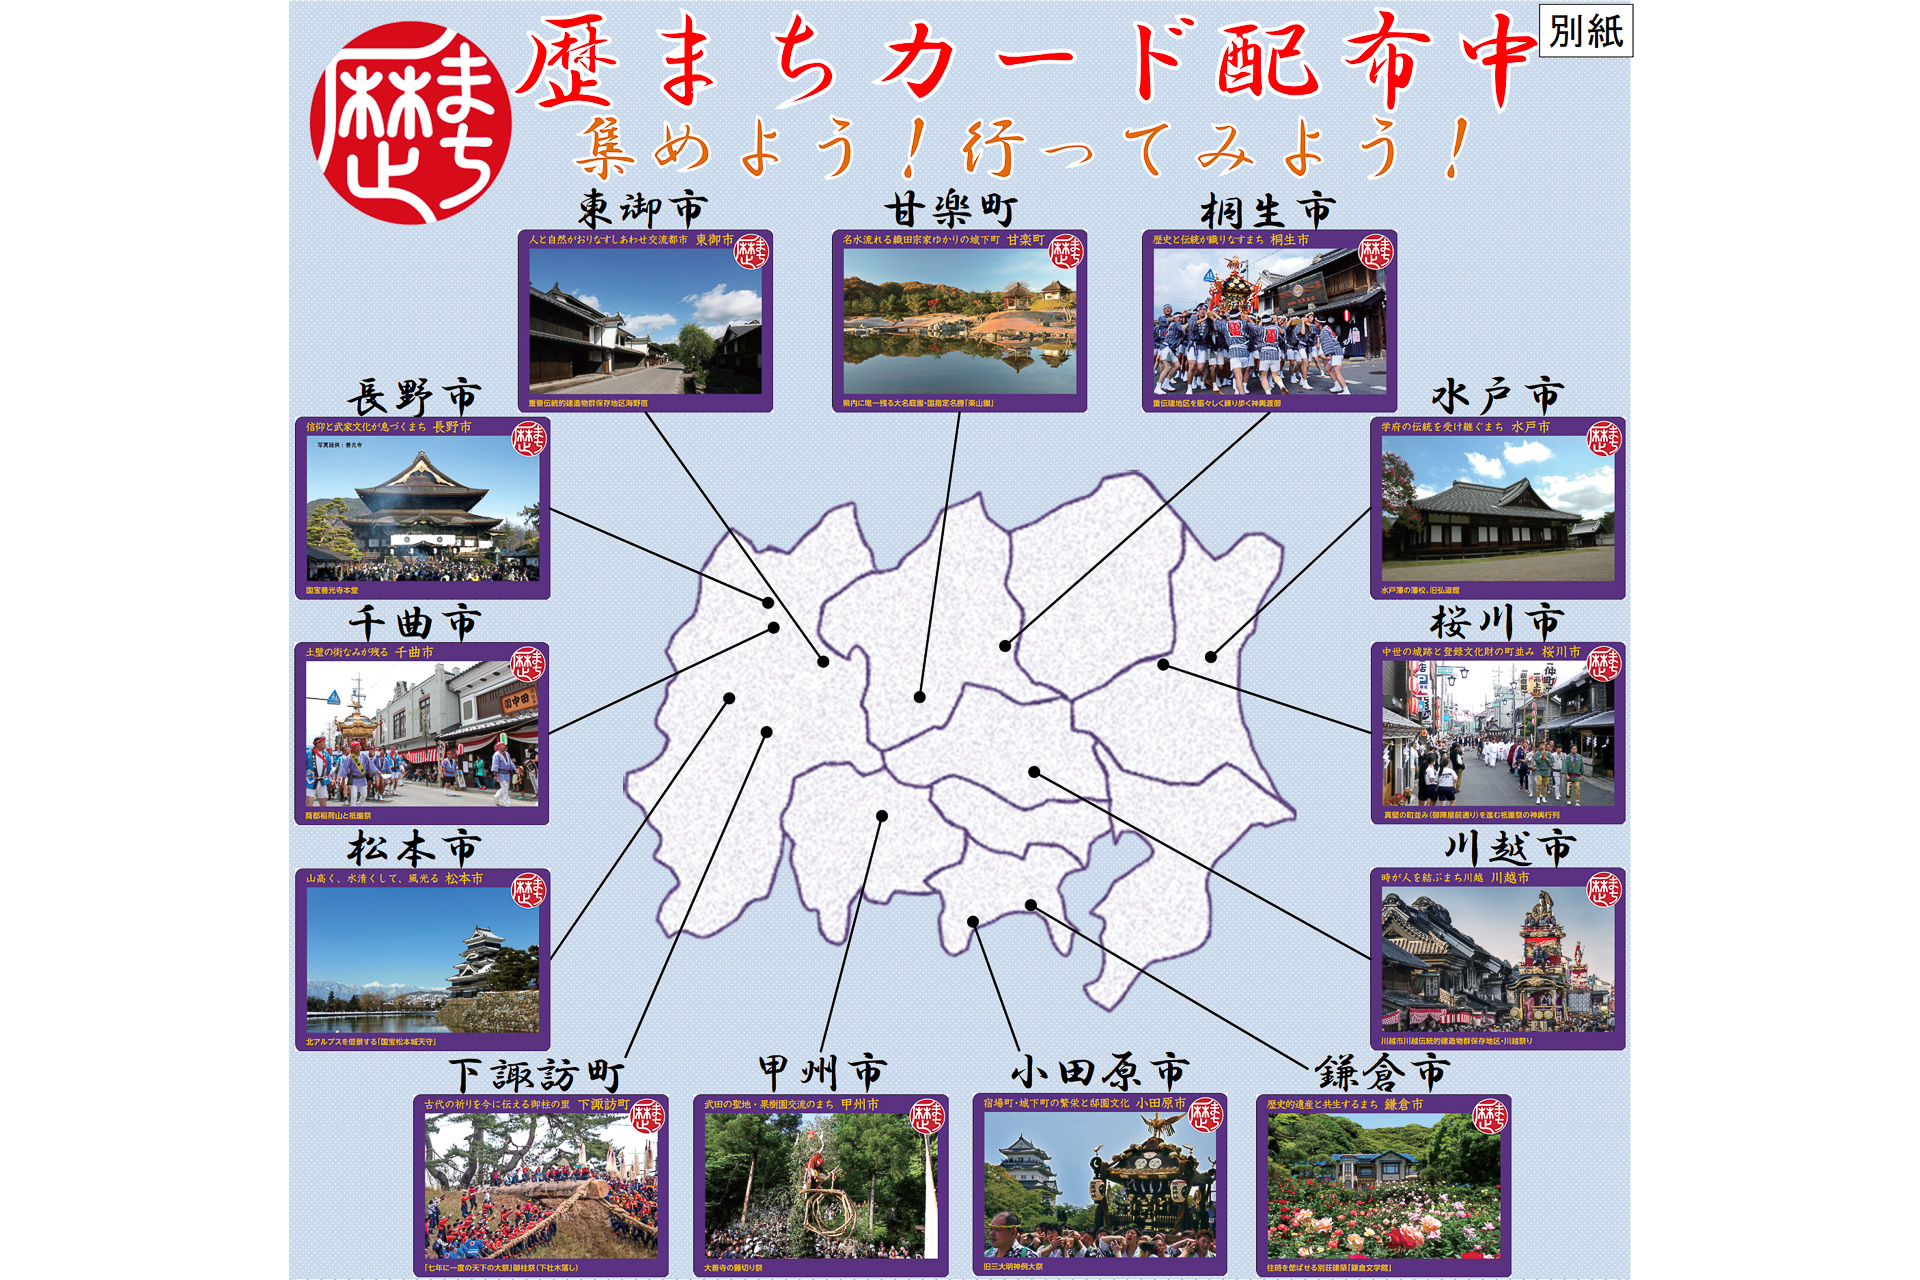 国交省と関東13都市、地域の歴史的魅力を伝える「歴まちカード」作成